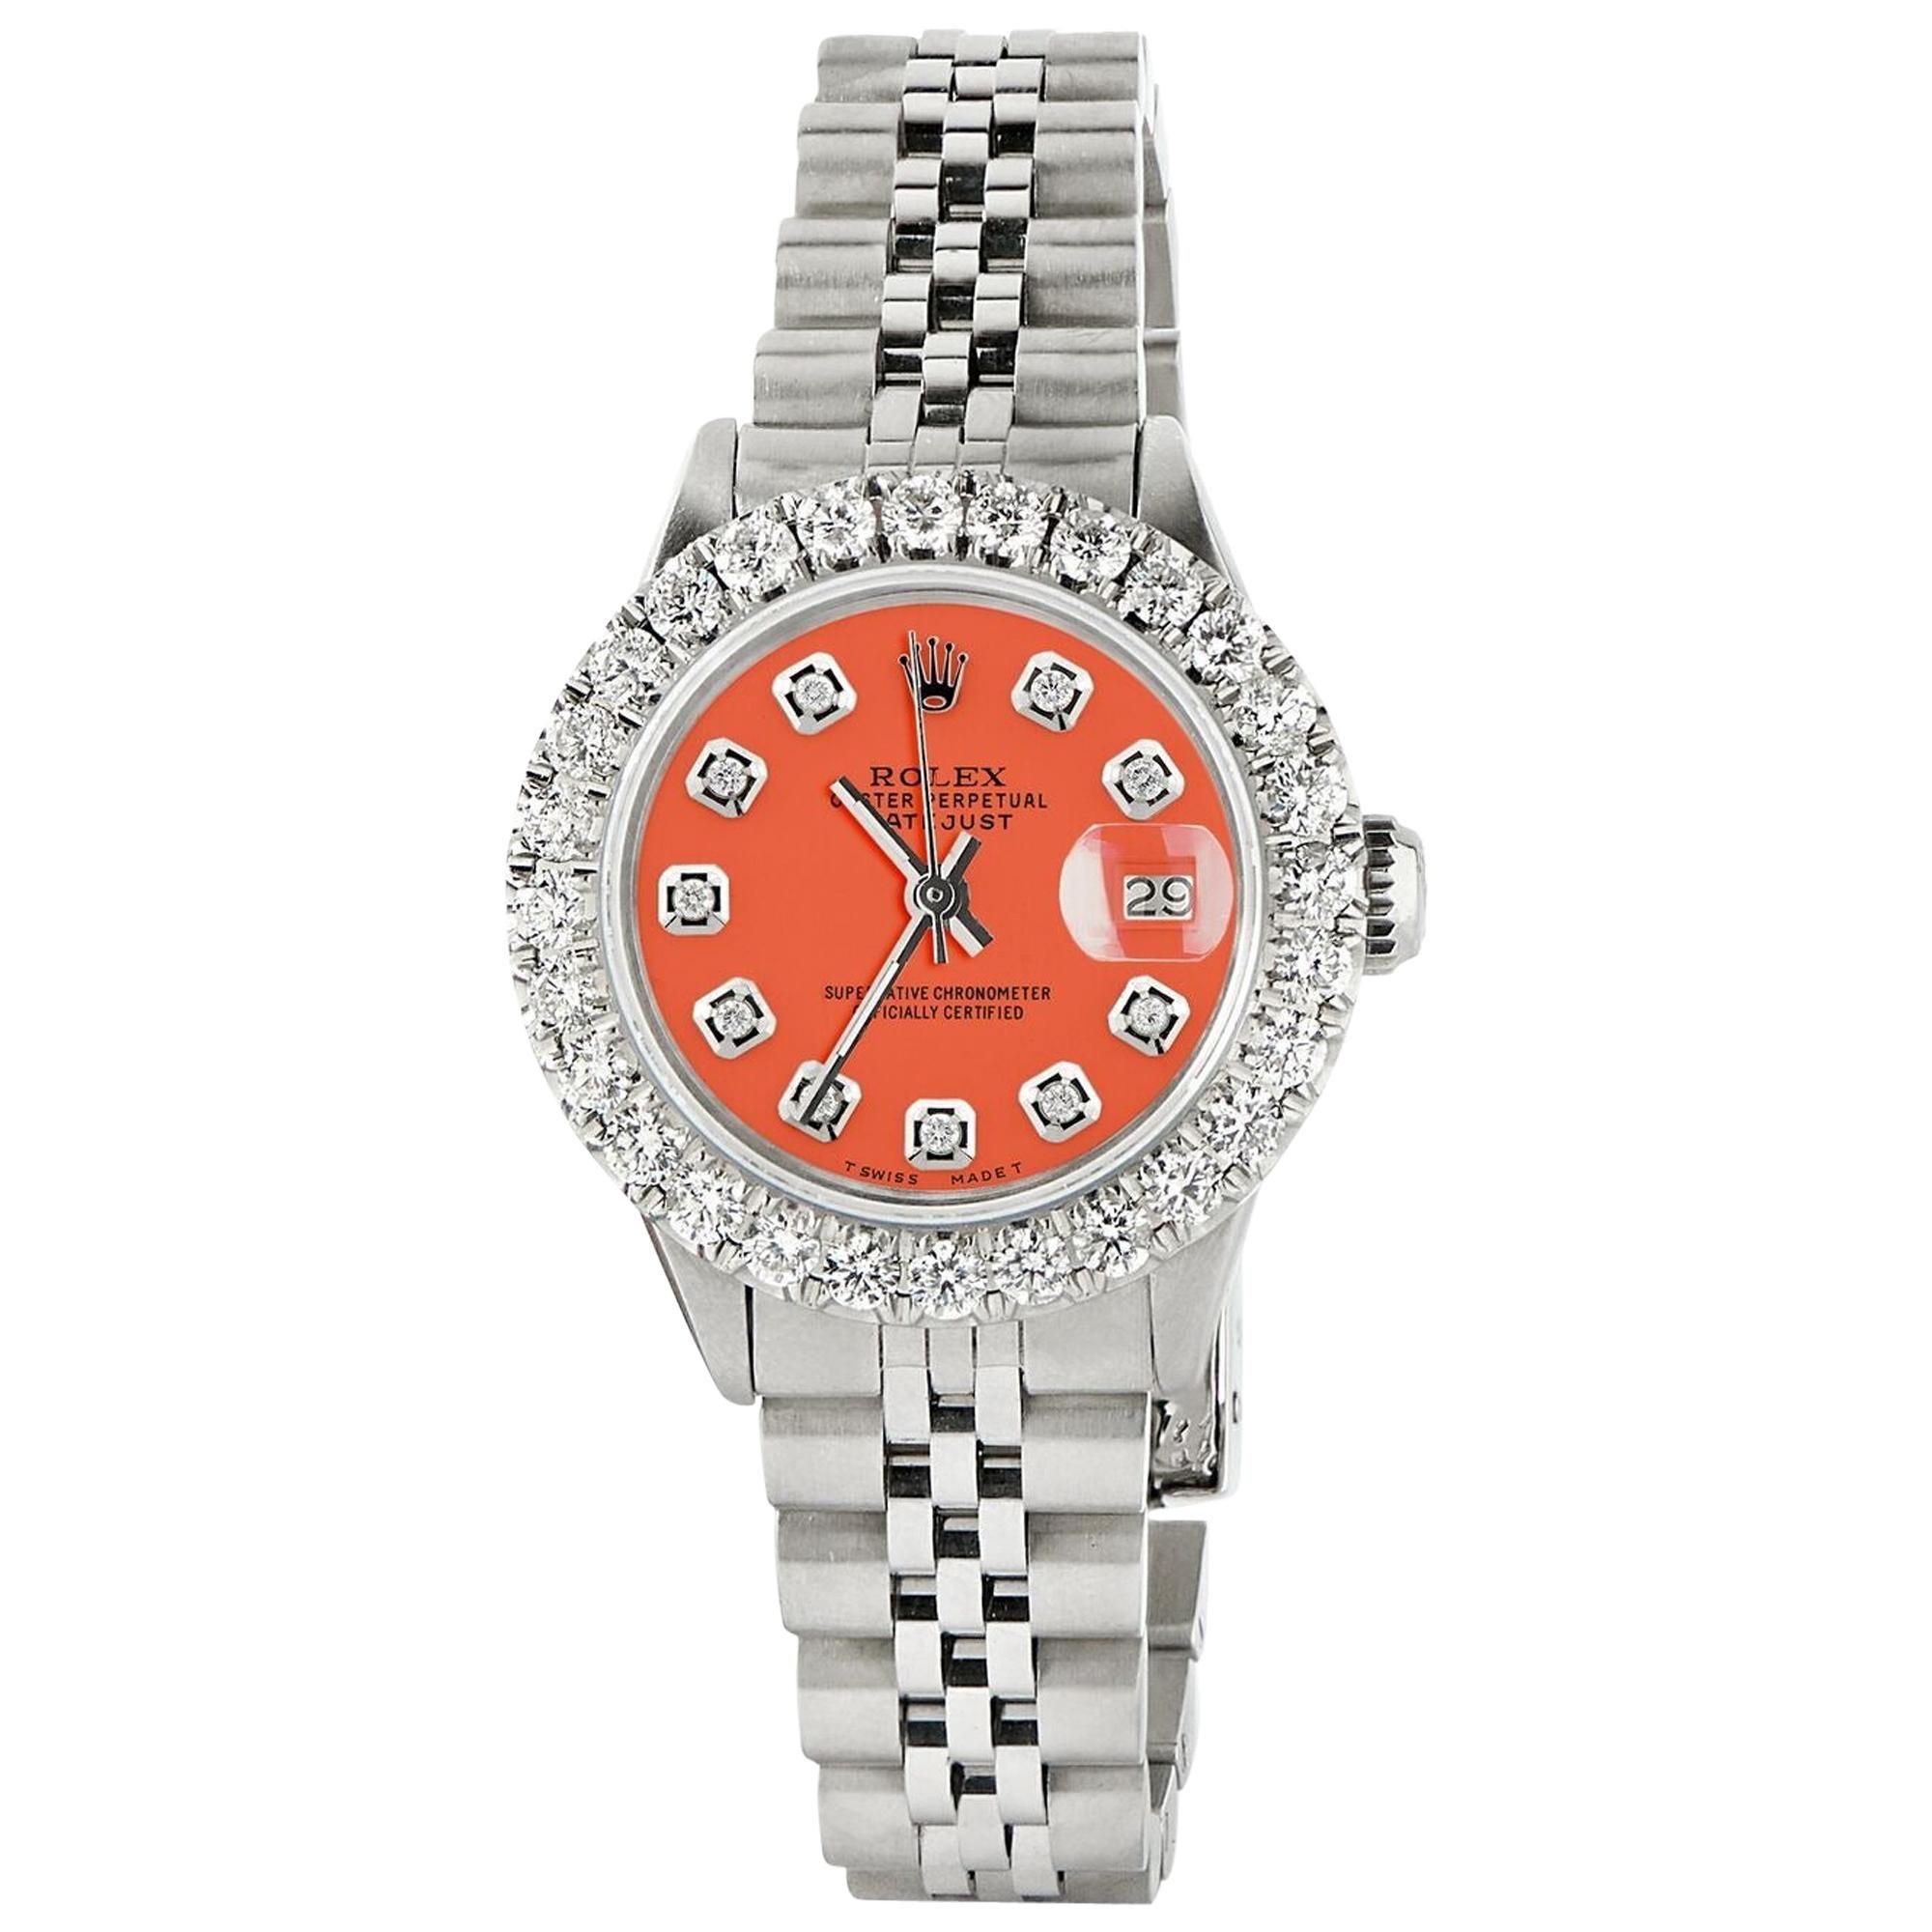 Rolex Datejust Steel Jubilee Watch 2 Carat Diamond Bezel / Orange Diamond Dial For Sale